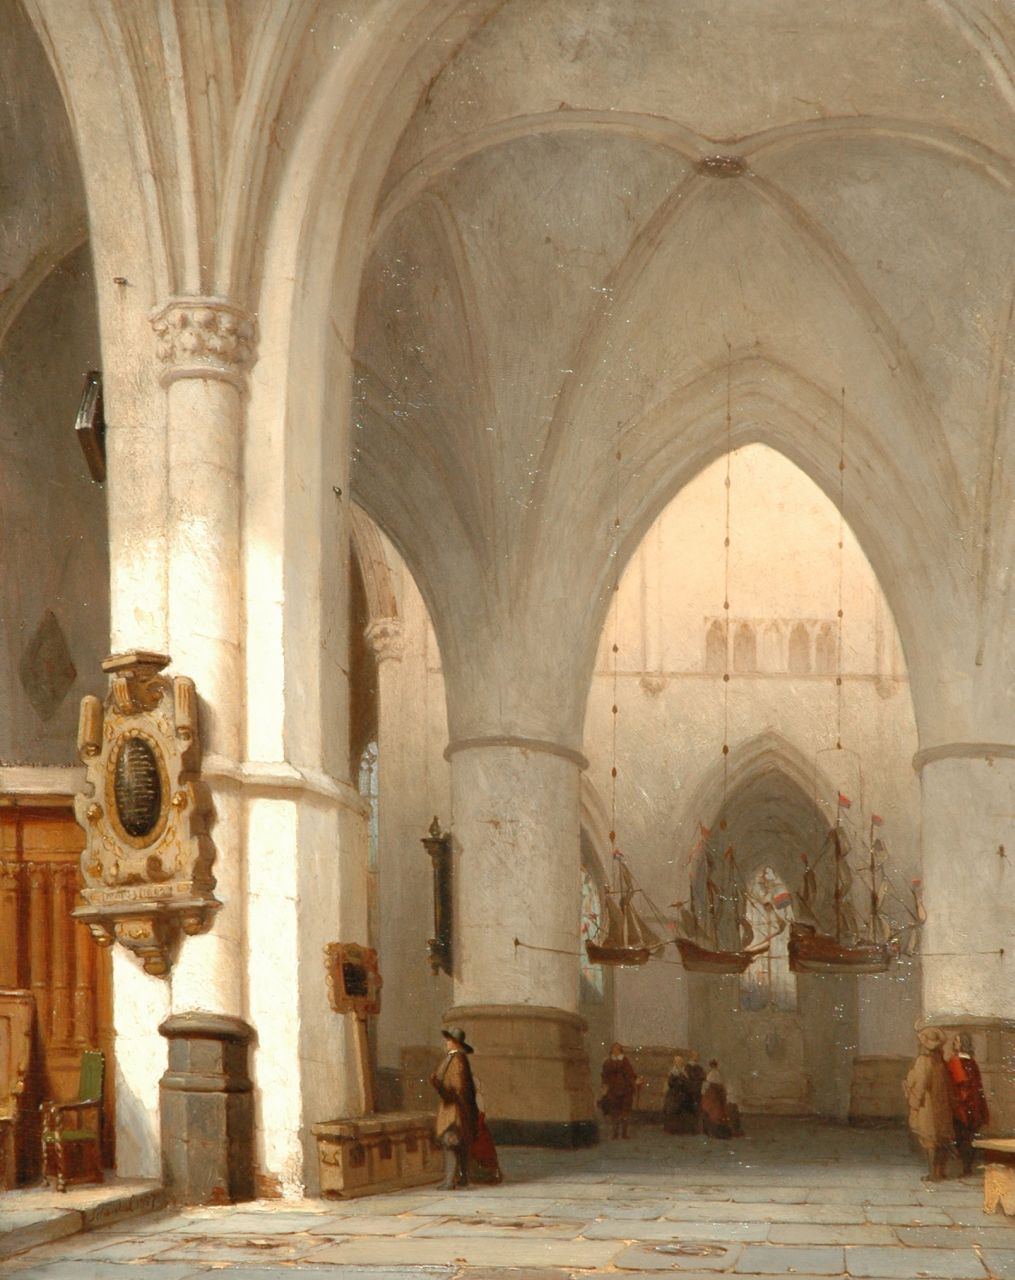 Schenkel J.J.  | Jan Jacob Schenkel, Interieur van de St. Bavokerk, Haarlem, olieverf op paneel 45,1 x 35,9 cm, gesigneerd linksonder en gedateerd 1857